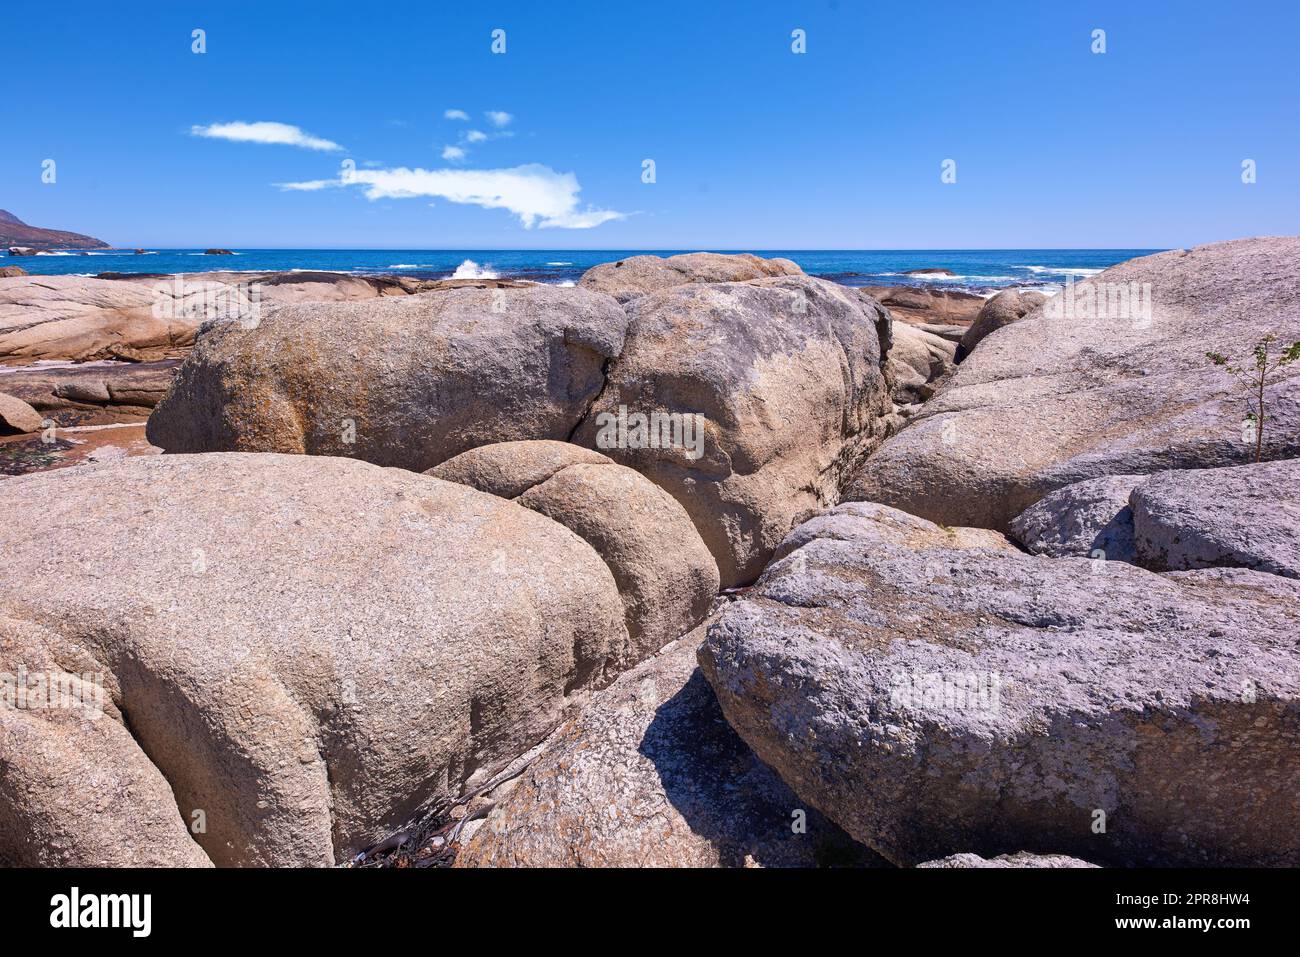 Côte rocheuse avec l'océan et ciel bleu avec copyspcae en arrière-plan. Paysage de la nature ou paysage marin de rochers. Rochers ou grandes pierres naturelles dans la mer avec de belles textures rugueuses Banque D'Images